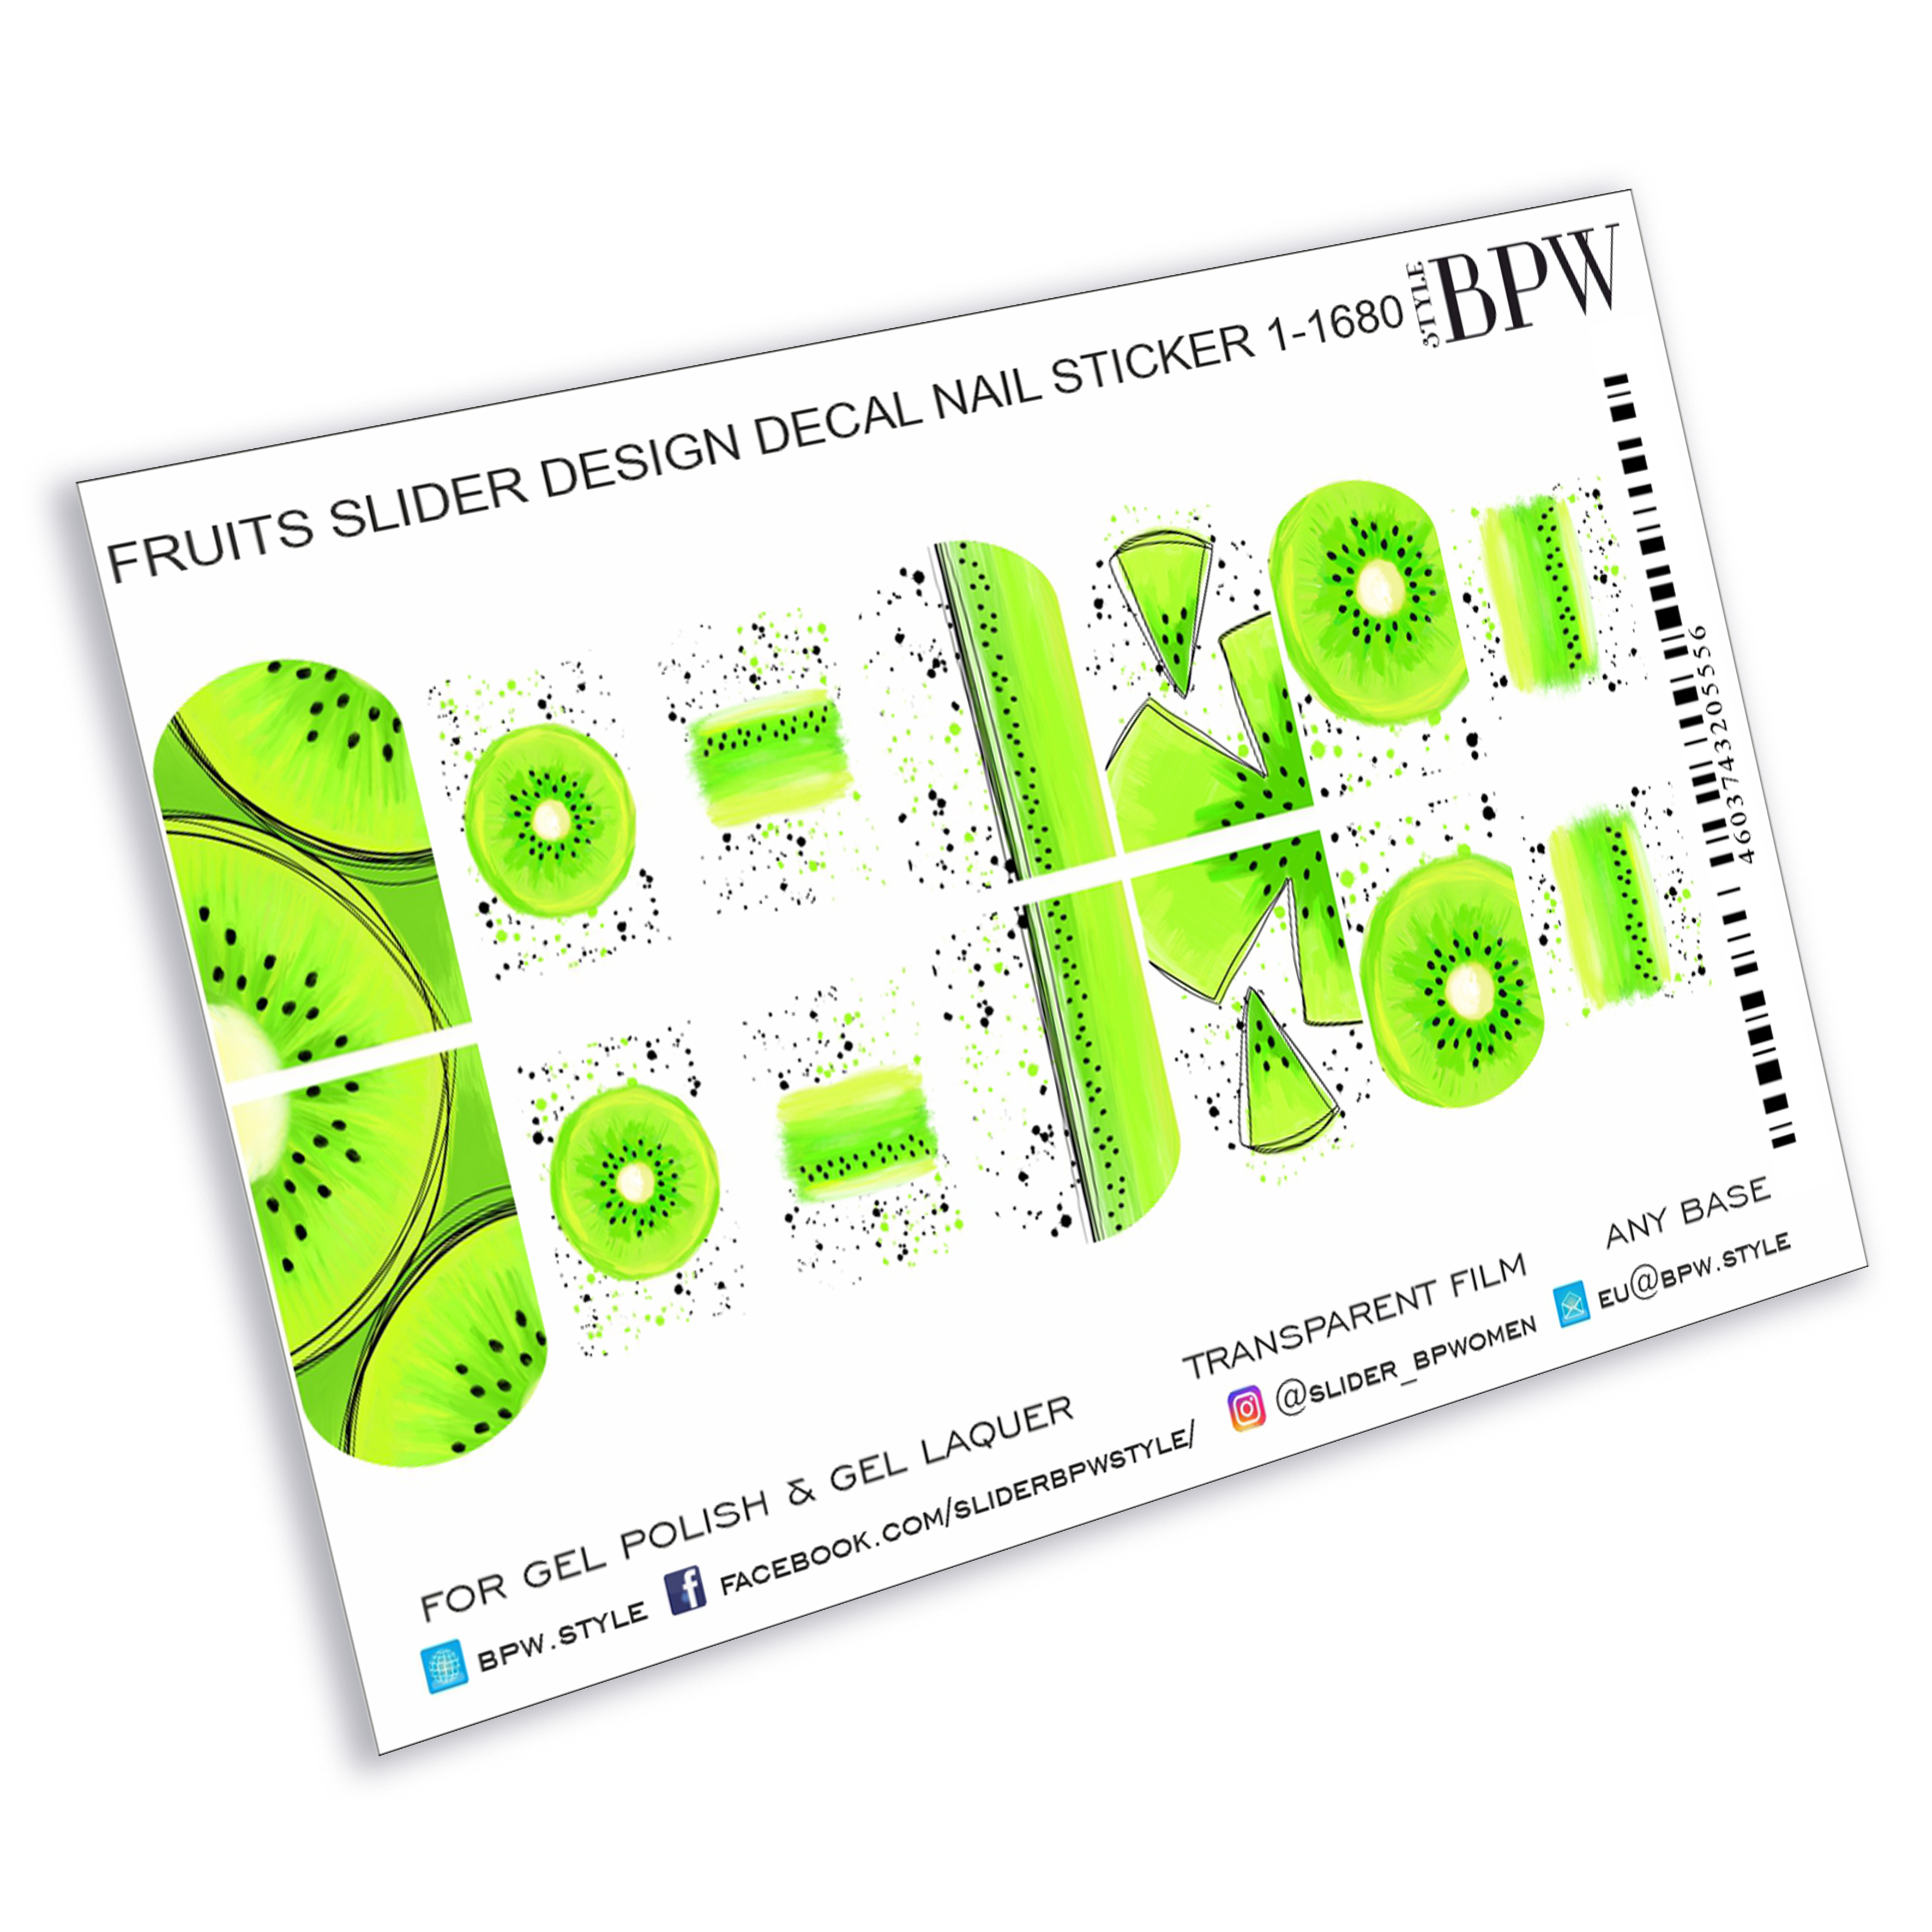 Слайдер-дизайн Коктейль из киви из каталога Слайдер дизайн для ногтей в интернет-магазине BPW.style